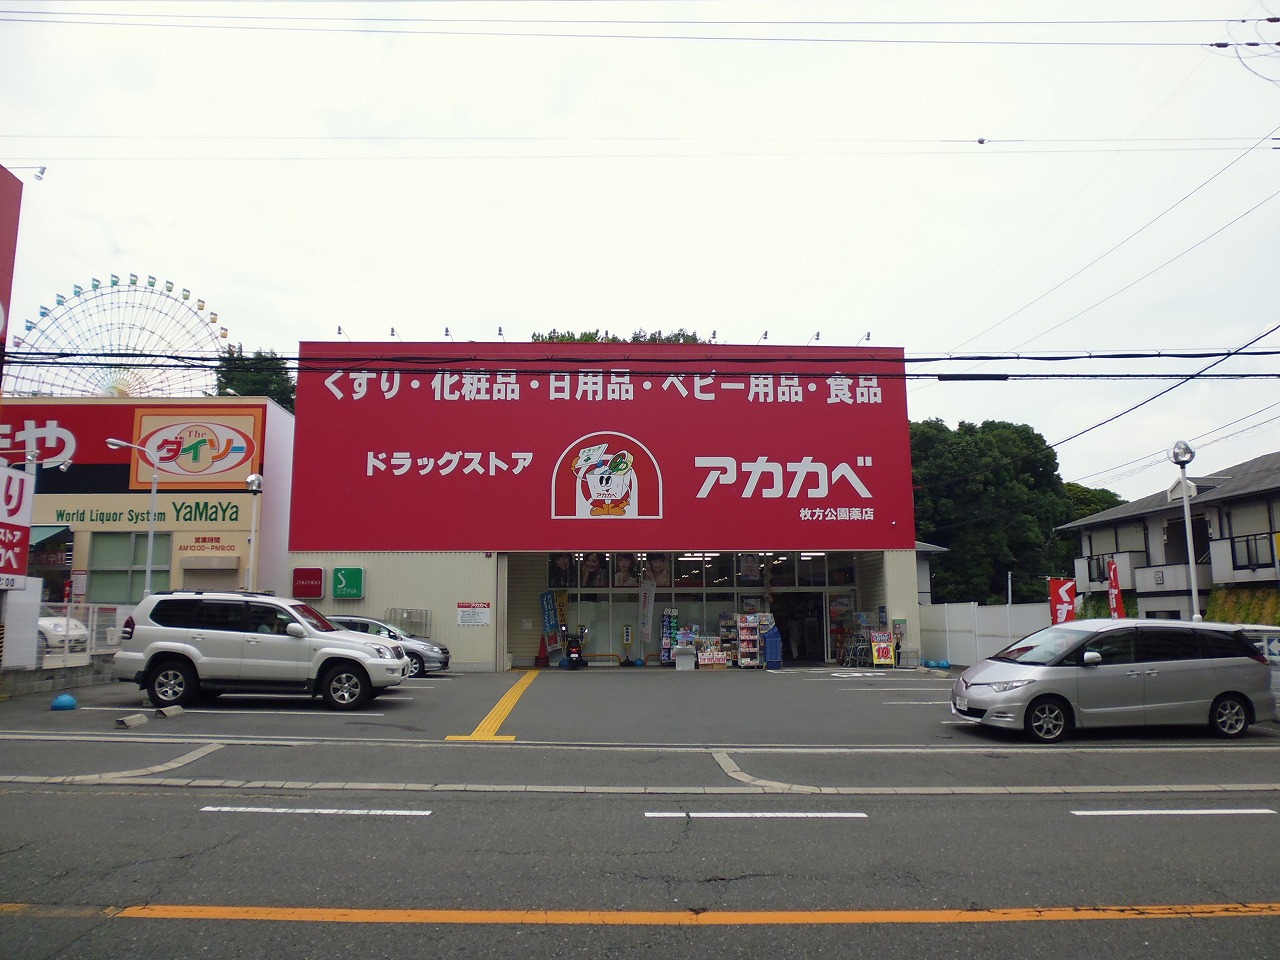 Dorakkusutoa. Drugstores Red Cliff Hirakatakoen shop 784m until (drugstore)